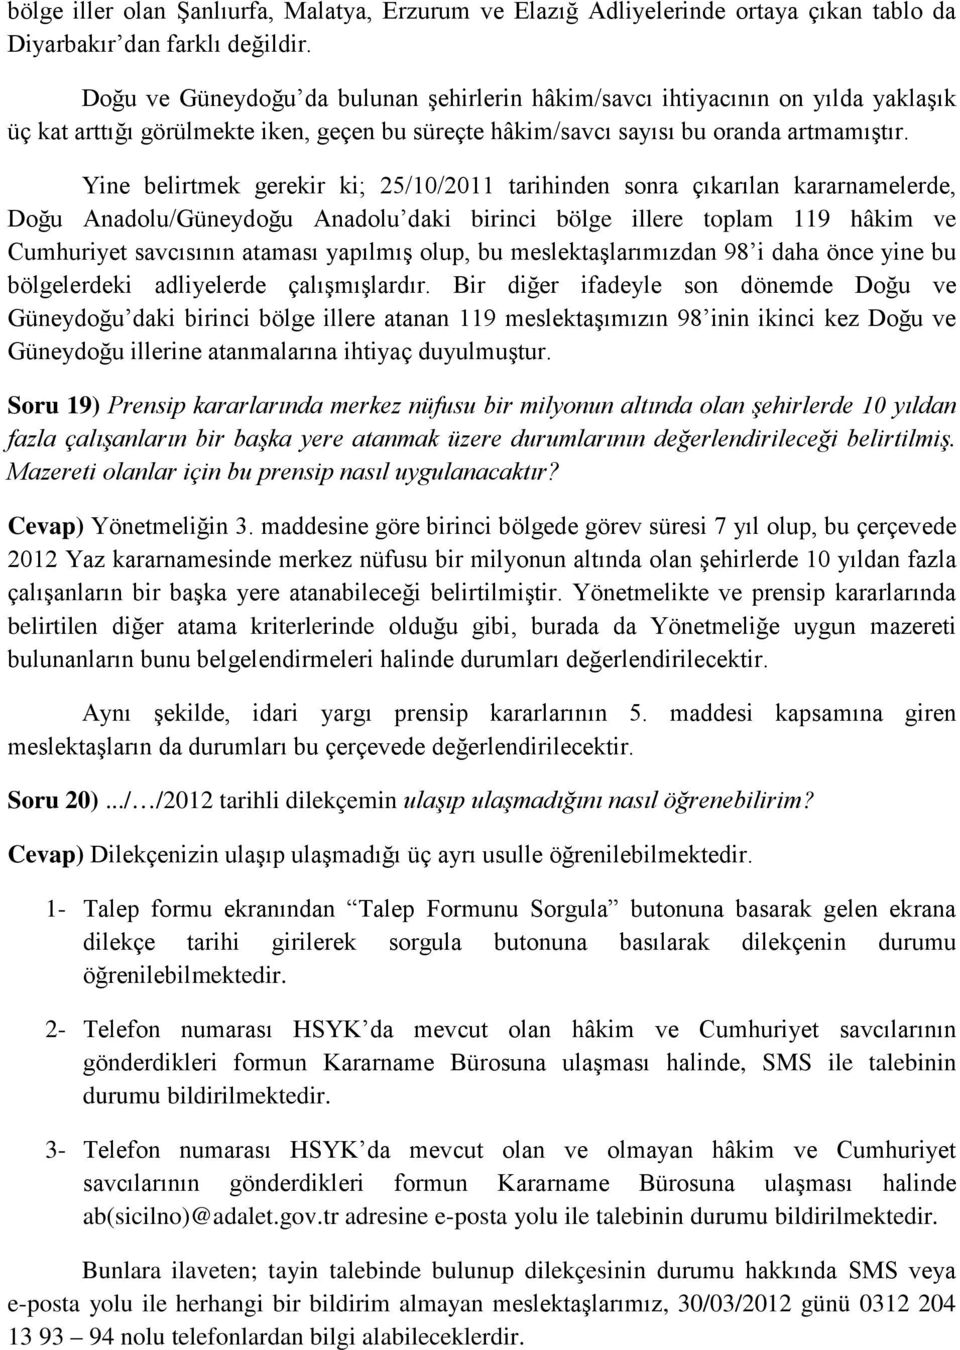 Yine belirtmek gerekir ki; 25/10/2011 tarihinden sonra çıkarılan kararnamelerde, Doğu Anadolu/Güneydoğu Anadolu daki birinci bölge illere toplam 119 hâkim ve Cumhuriyet savcısının ataması yapılmış